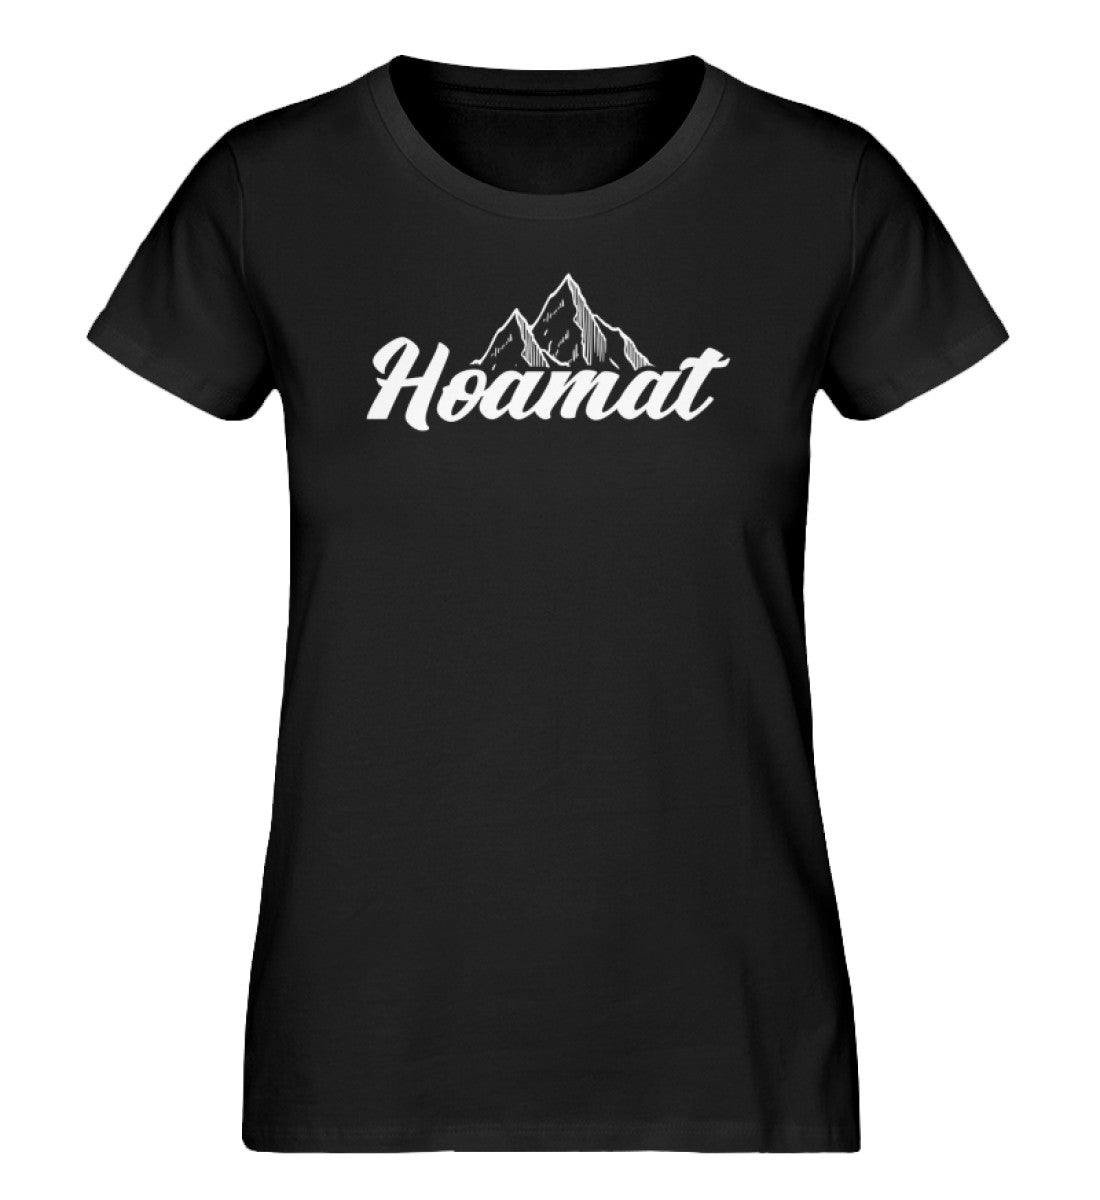 Hoamat - Damen Premium Organic T-Shirt berge Schwarz